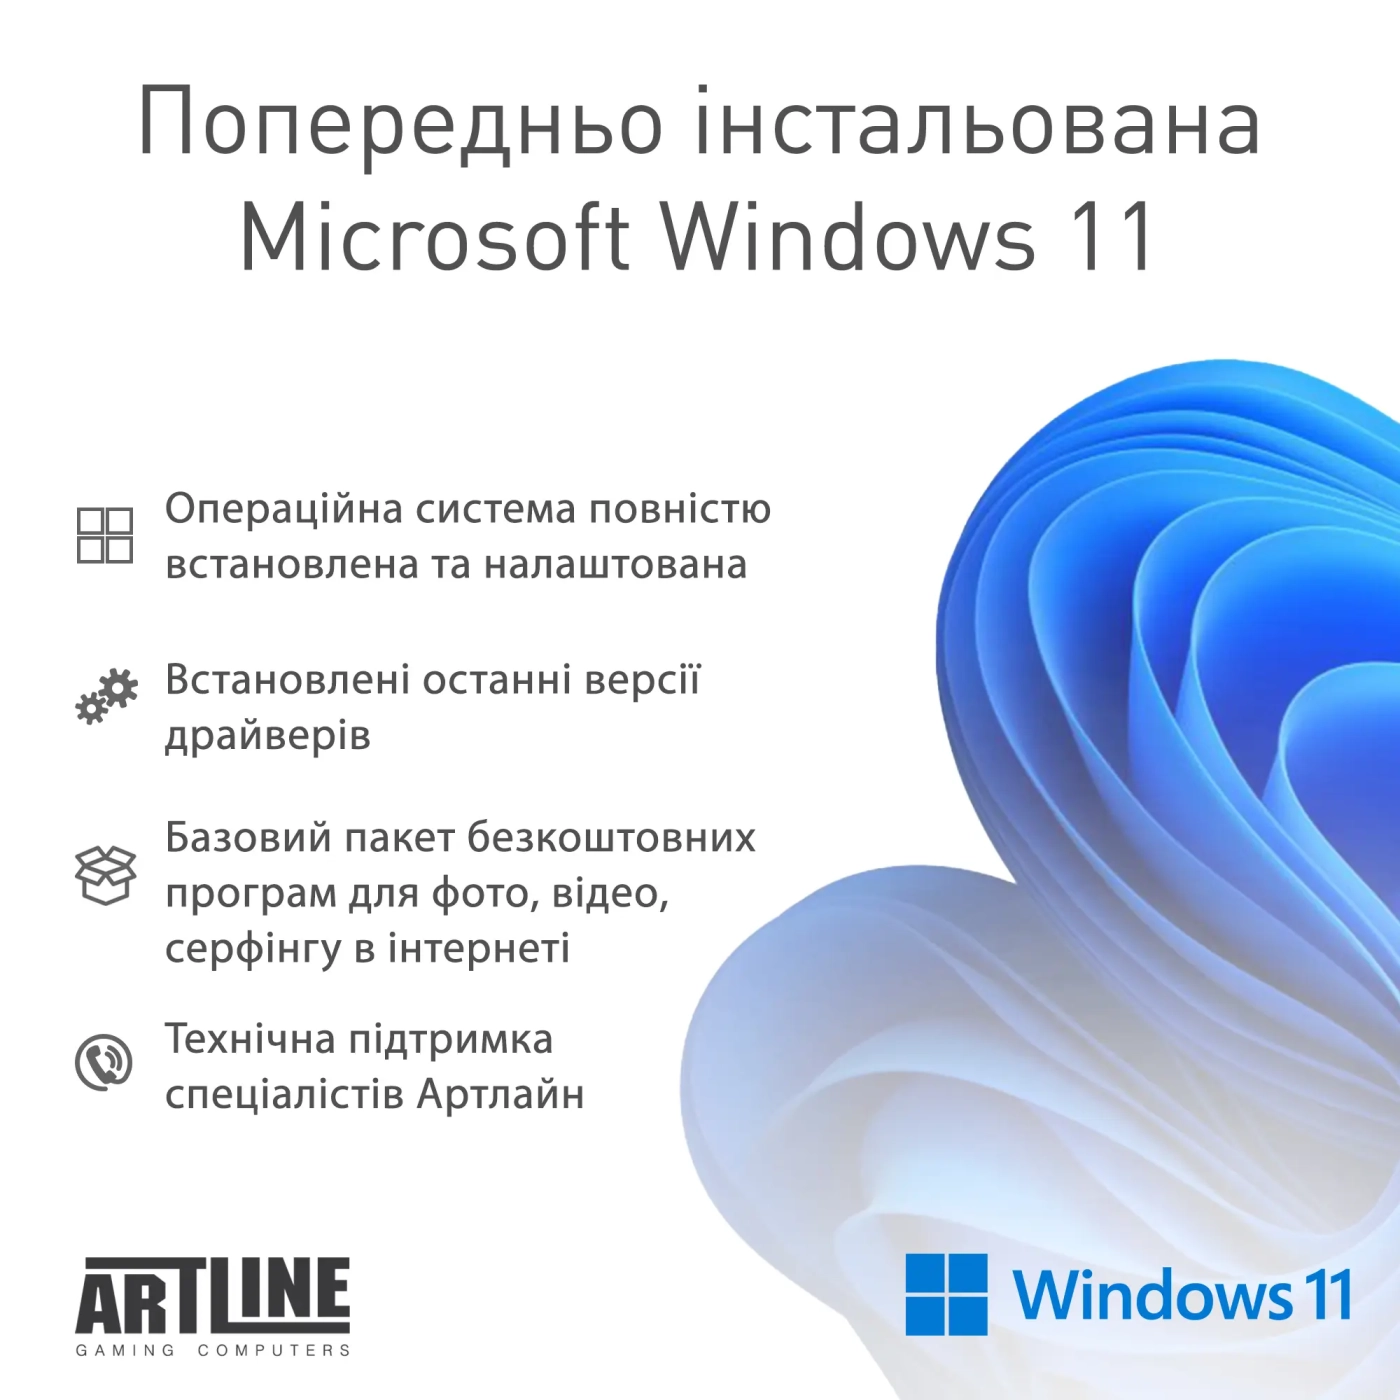 Купить Компьютер ARTLINE Gaming D31 Windows 11 Home (D31v15Win) - фото 12